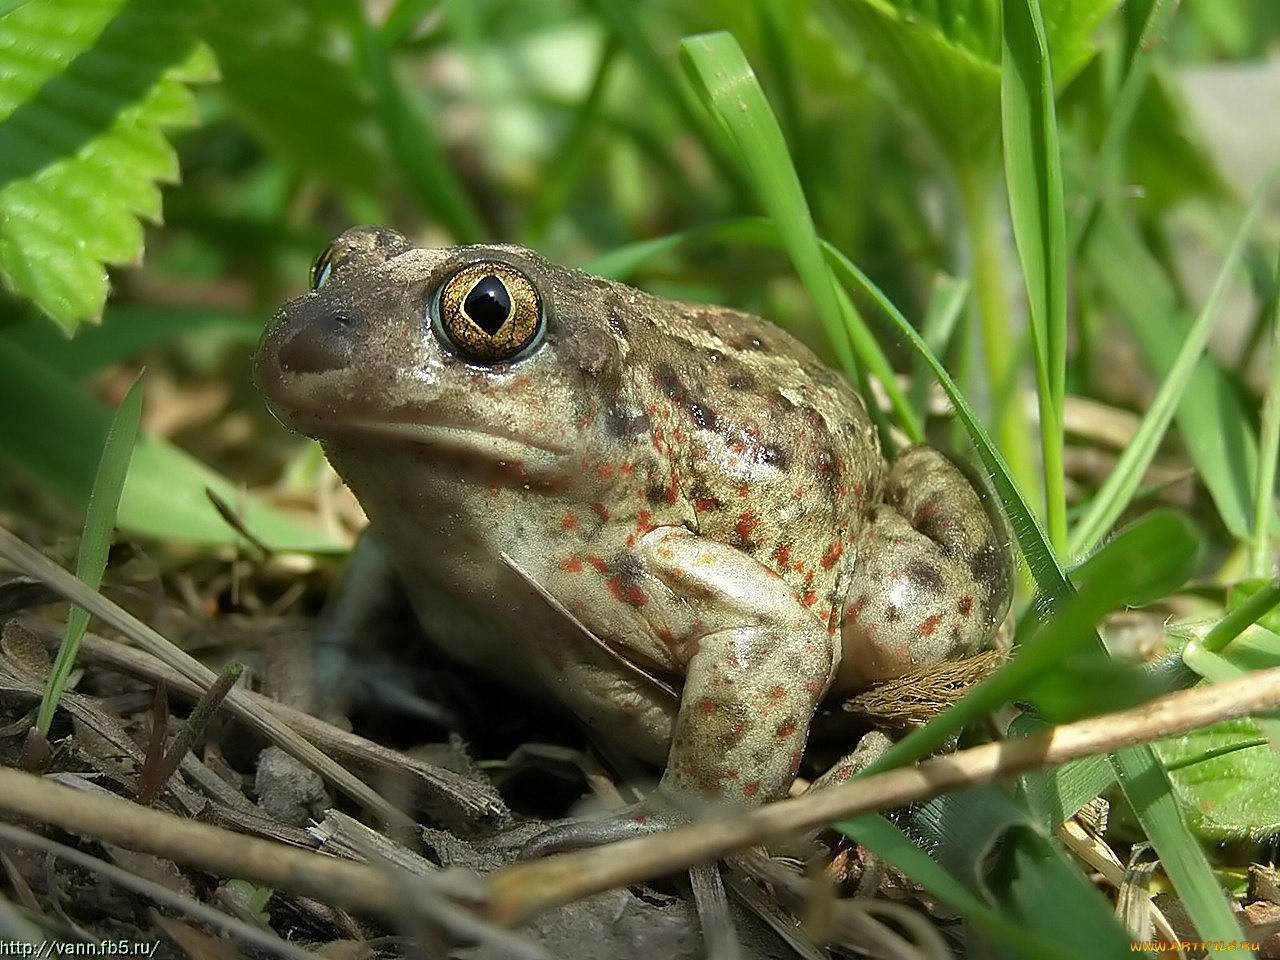 Земляная жаба — земноводное с плохой репутацией. так ли это?